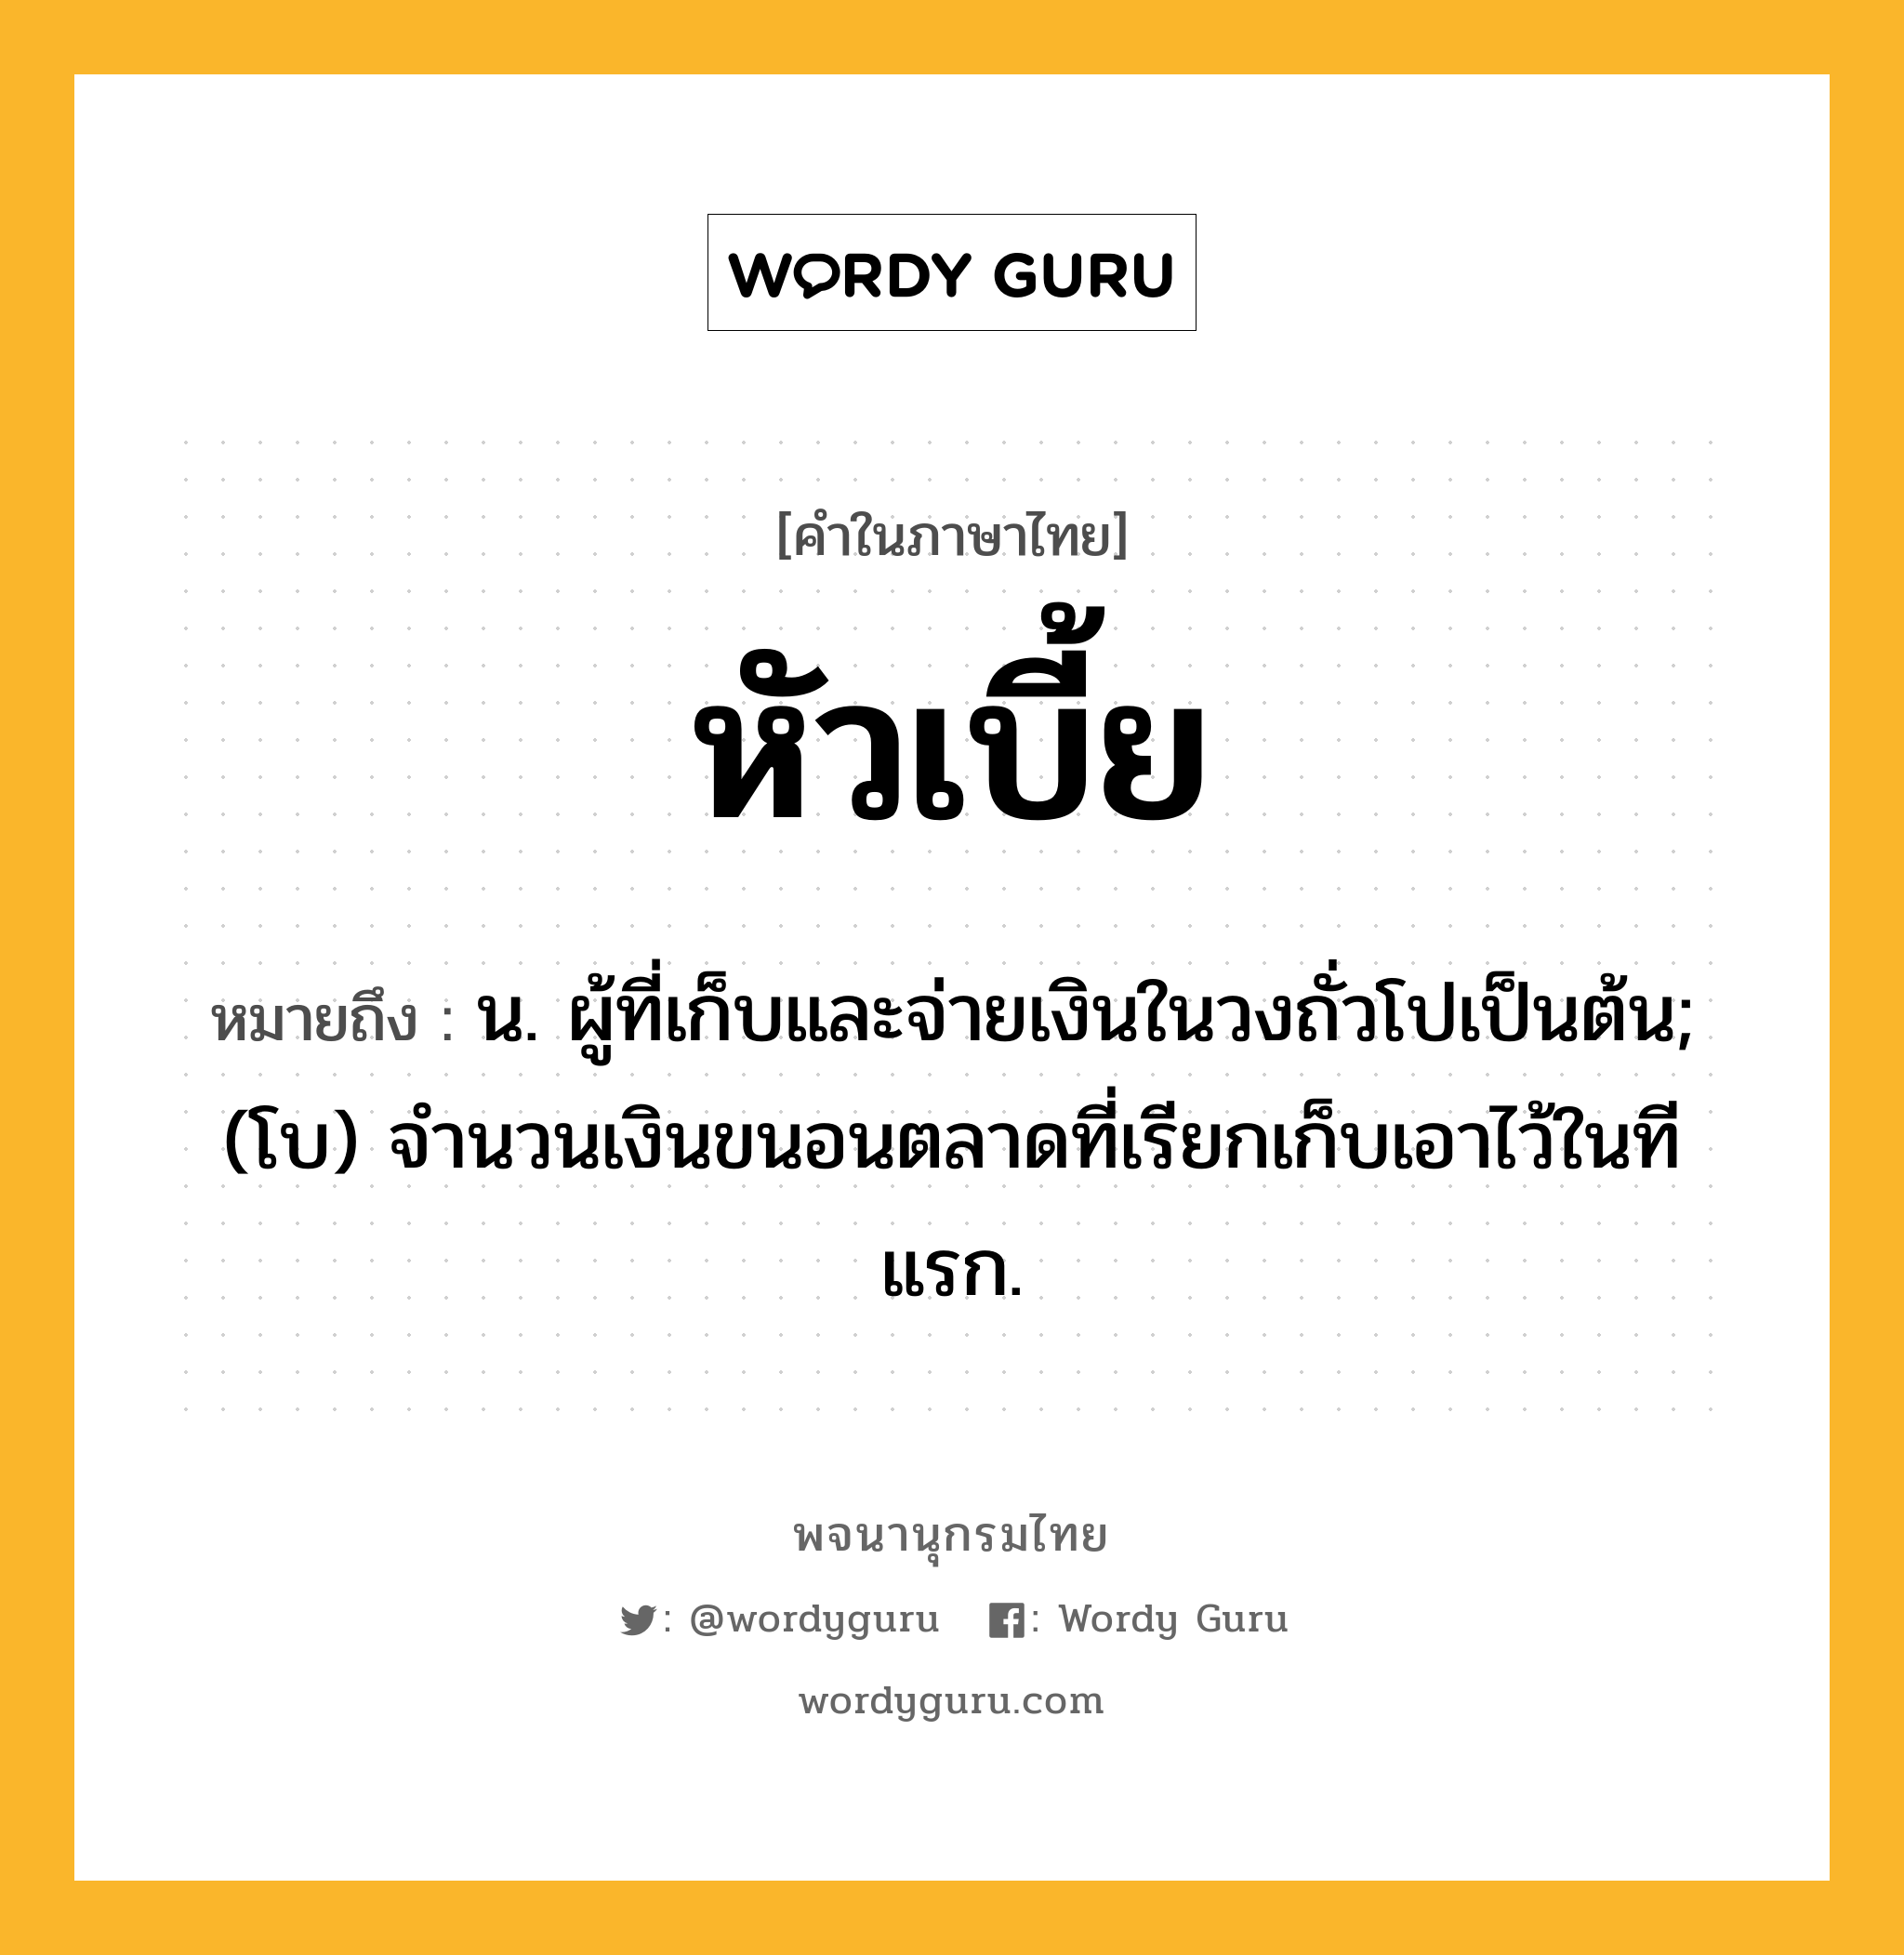 หัวเบี้ย ความหมาย หมายถึงอะไร?, คำในภาษาไทย หัวเบี้ย หมายถึง น. ผู้ที่เก็บและจ่ายเงินในวงถั่วโปเป็นต้น; (โบ) จํานวนเงินขนอนตลาดที่เรียกเก็บเอาไว้ในทีแรก.